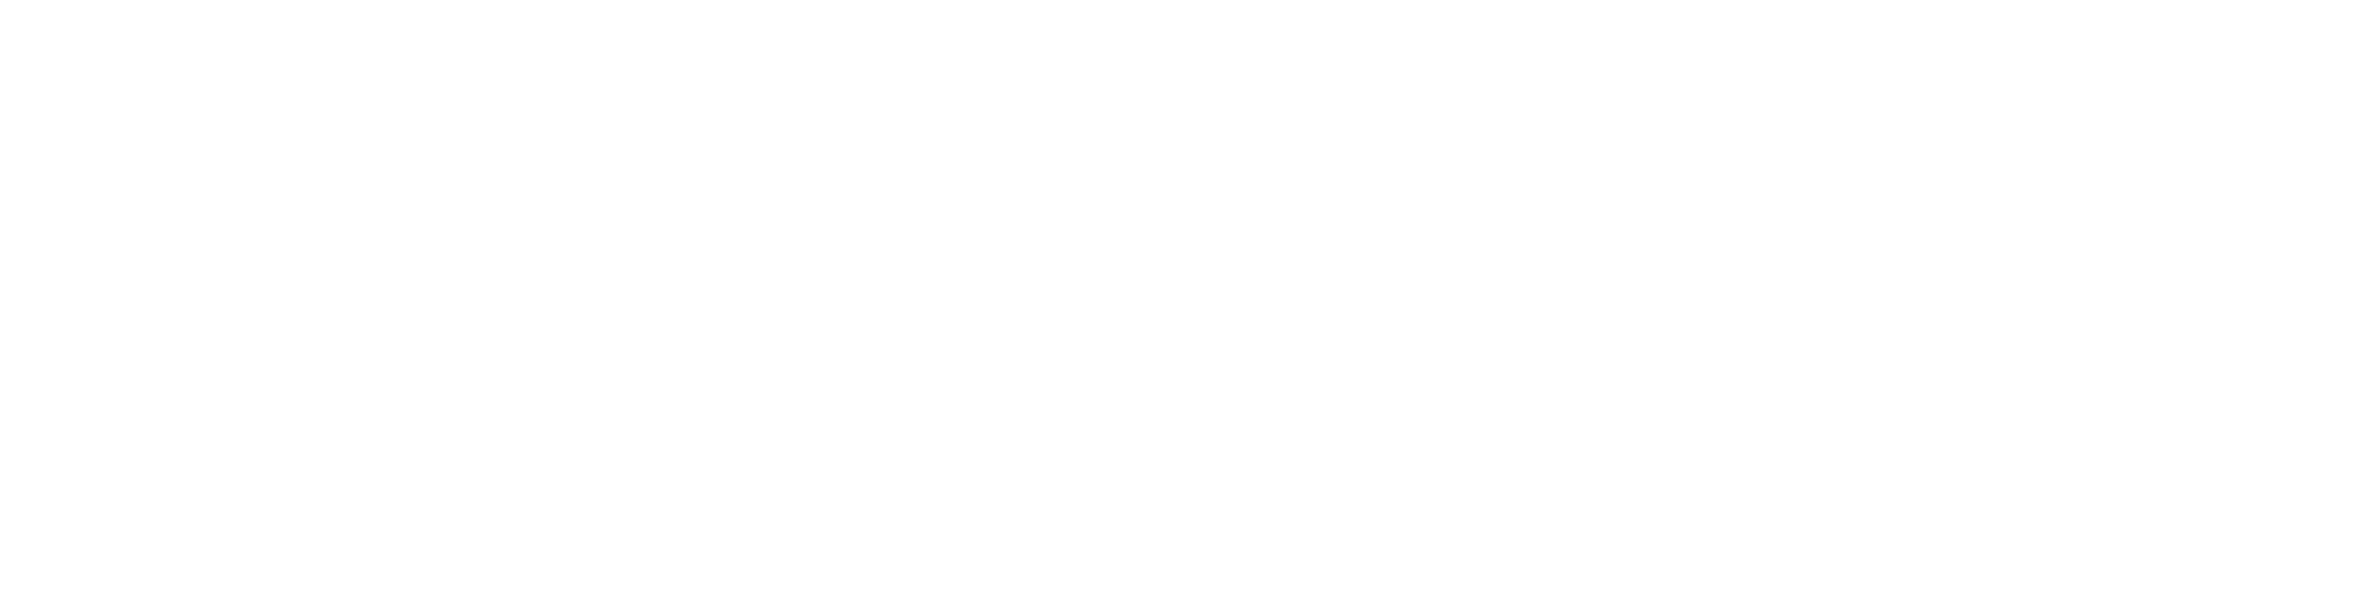 Fantasize Magazine